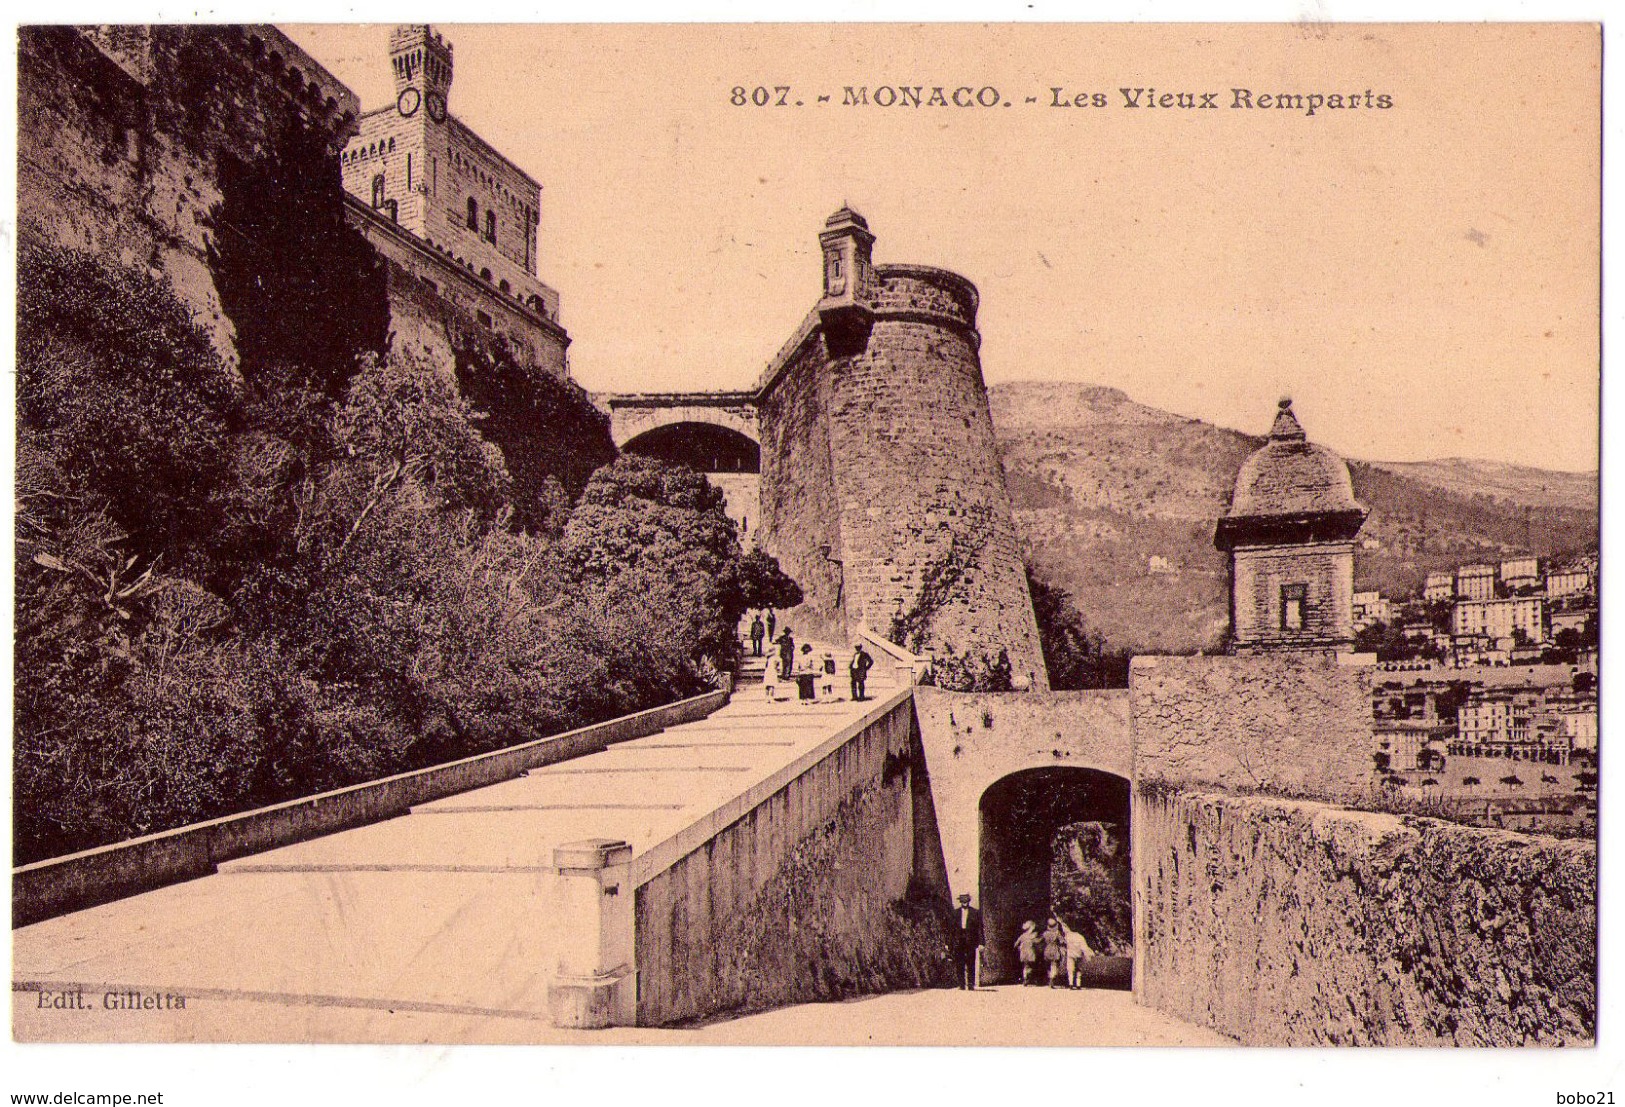 6059 - Monaco - Les Vieux Remparts - N°807 - édit. Giletta - - Les Terrasses